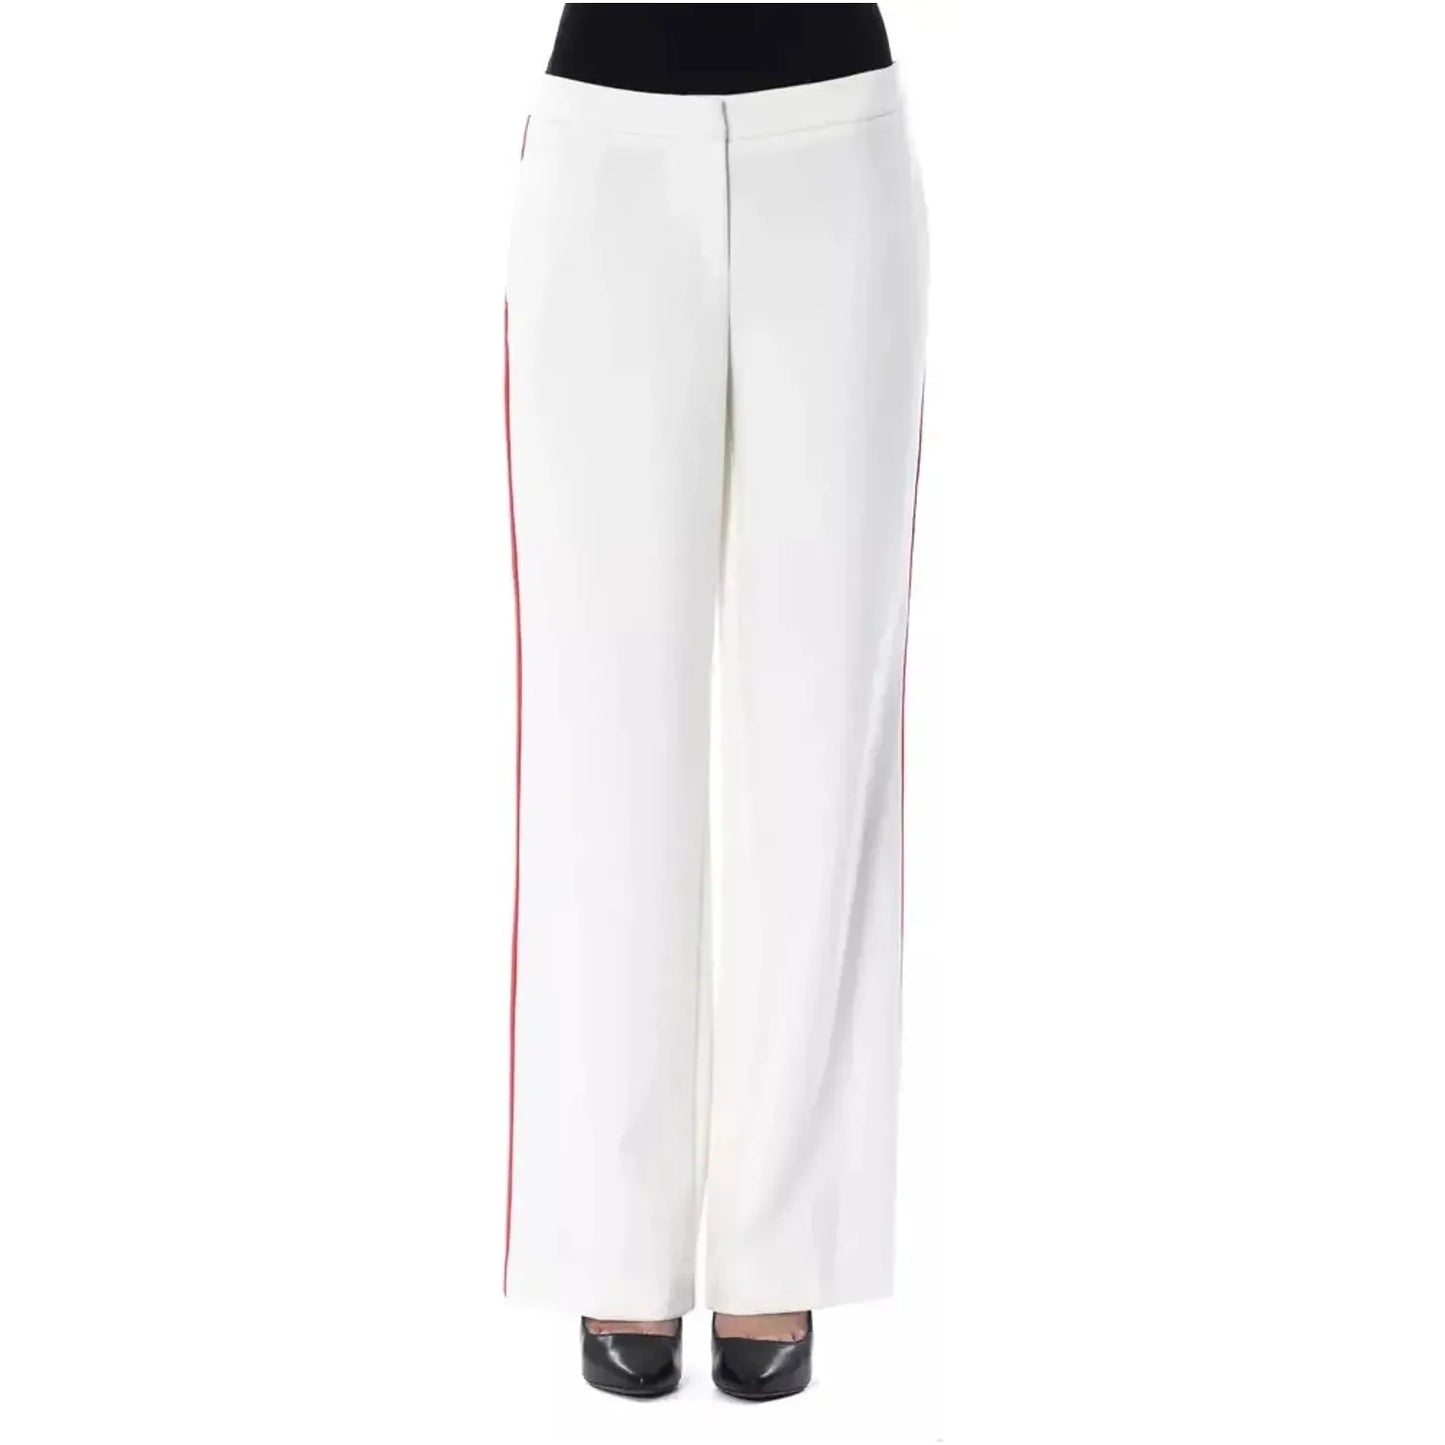 BYBLOSElegant White Stripe-Detailed TrousersMcRichard Designer Brands£159.00